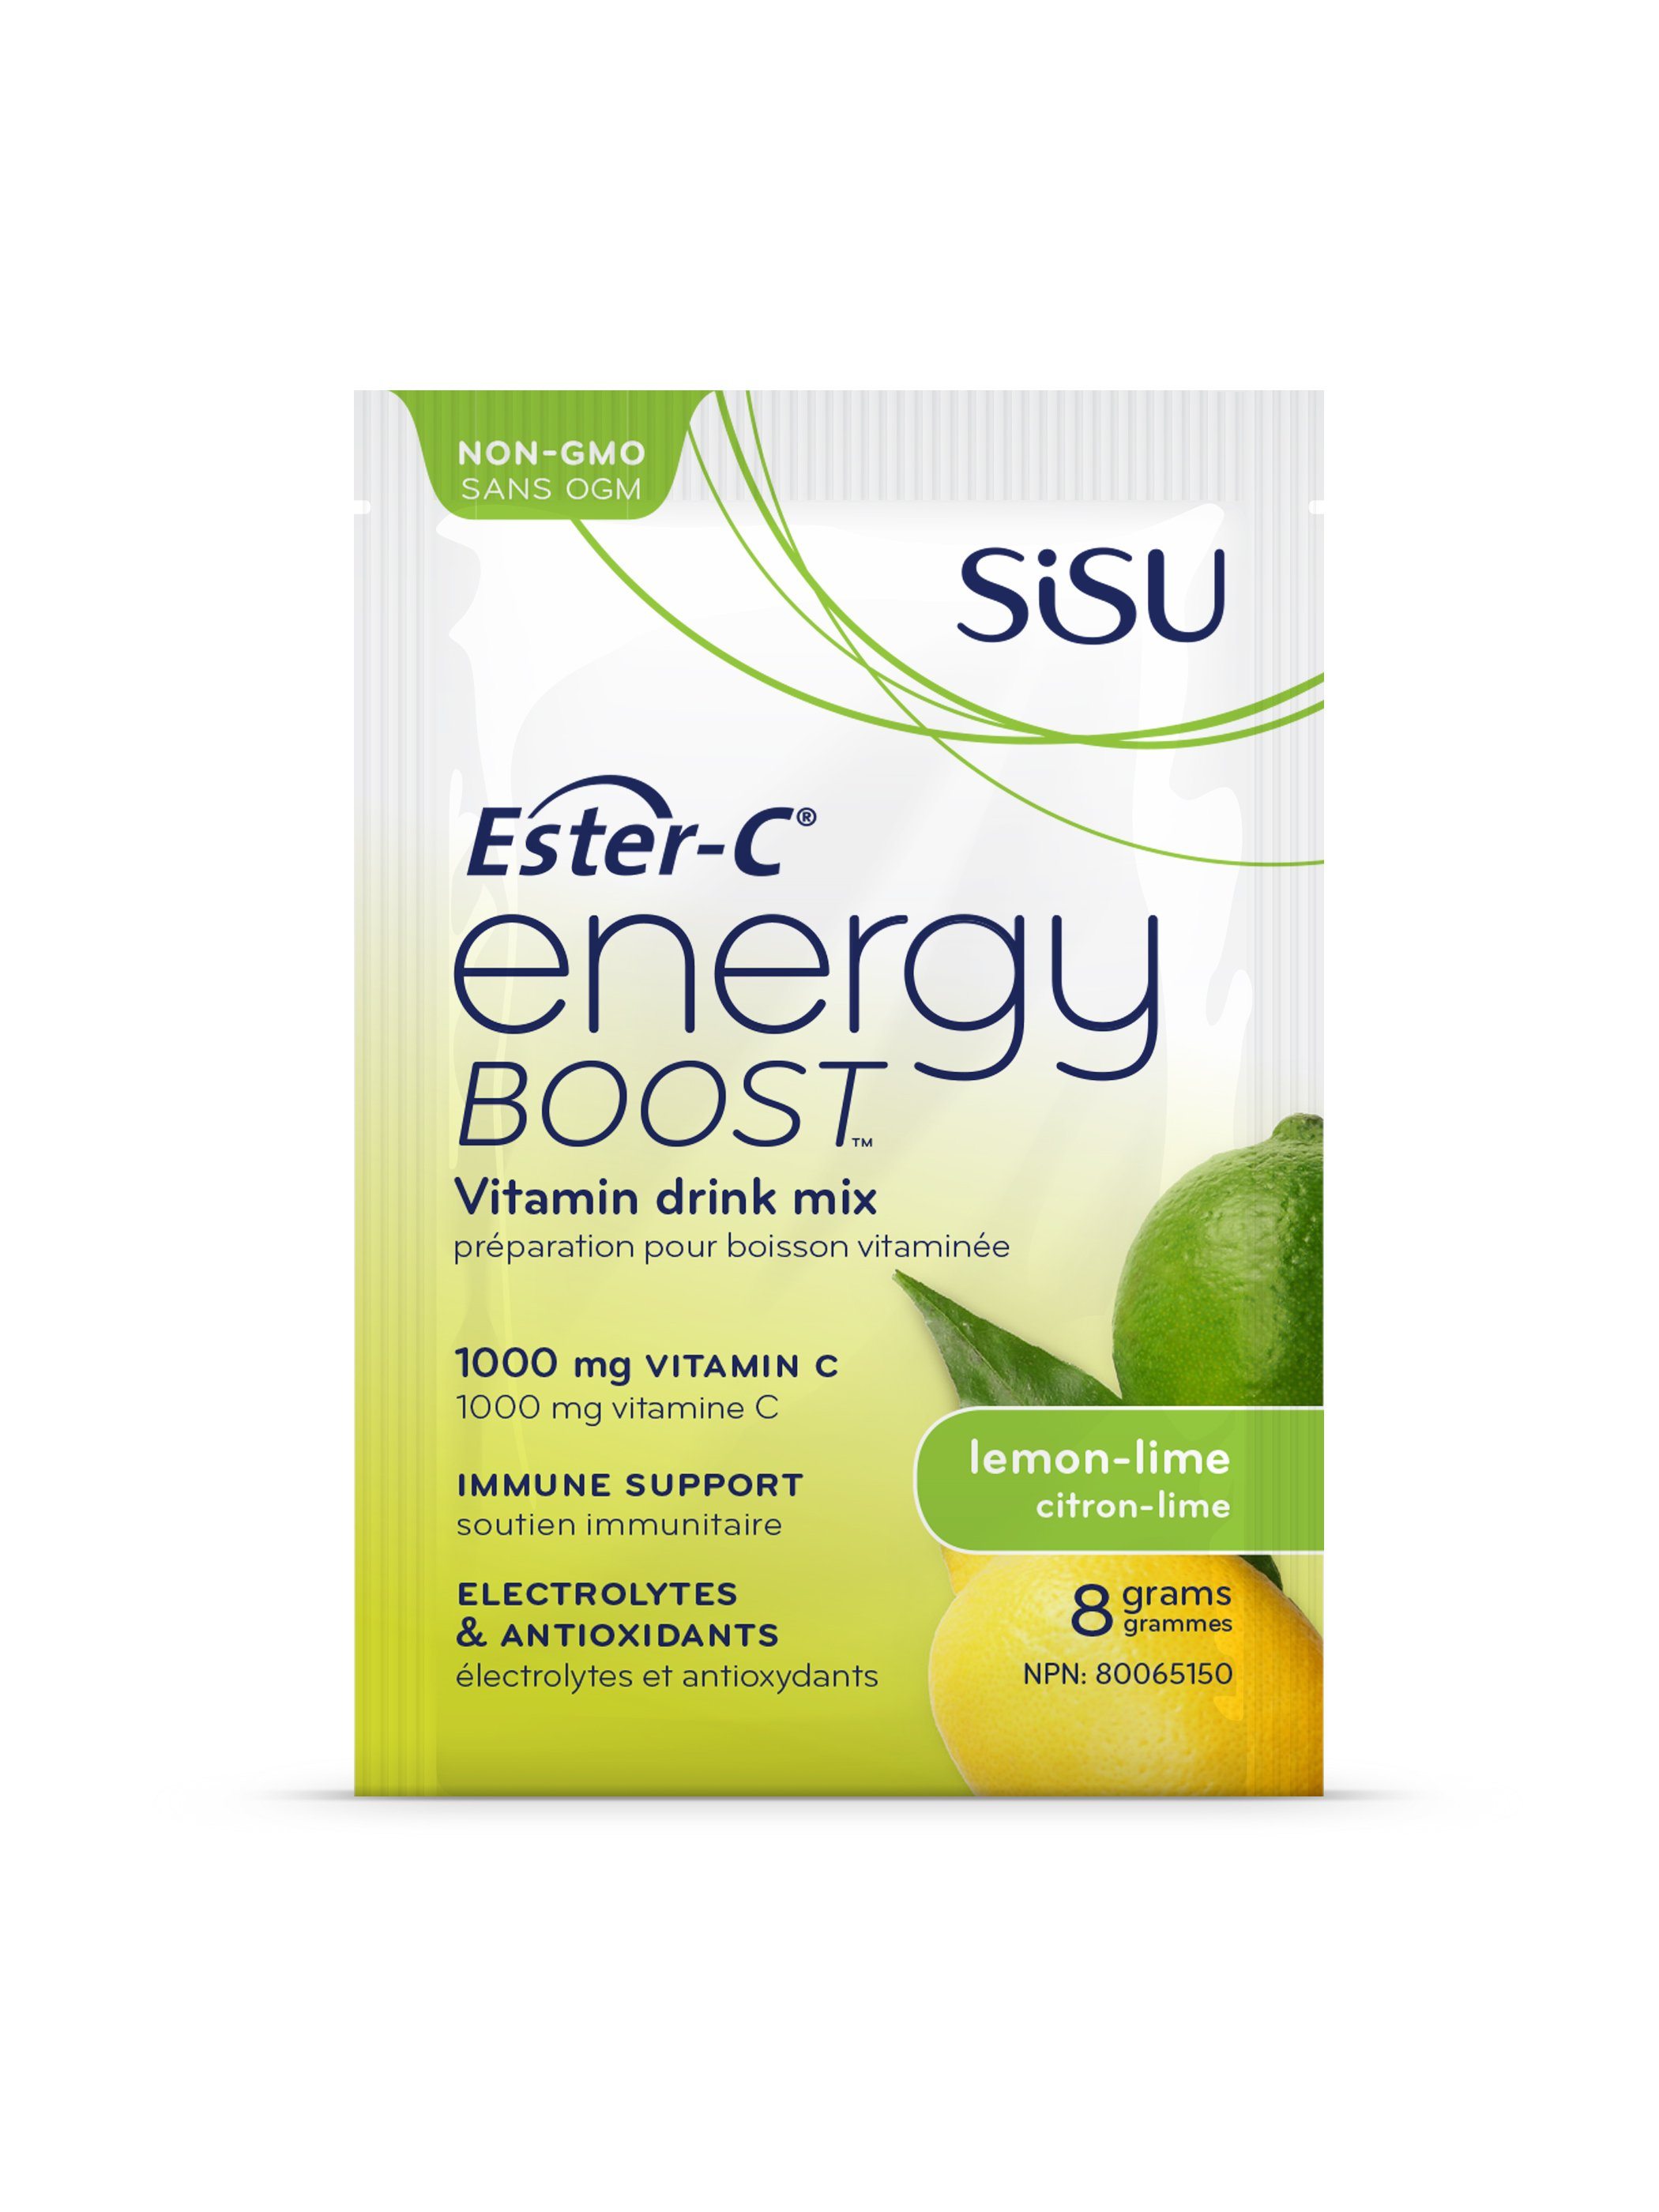 Sisu Ester-C Energy Boost Lemon Lime 8g Packet